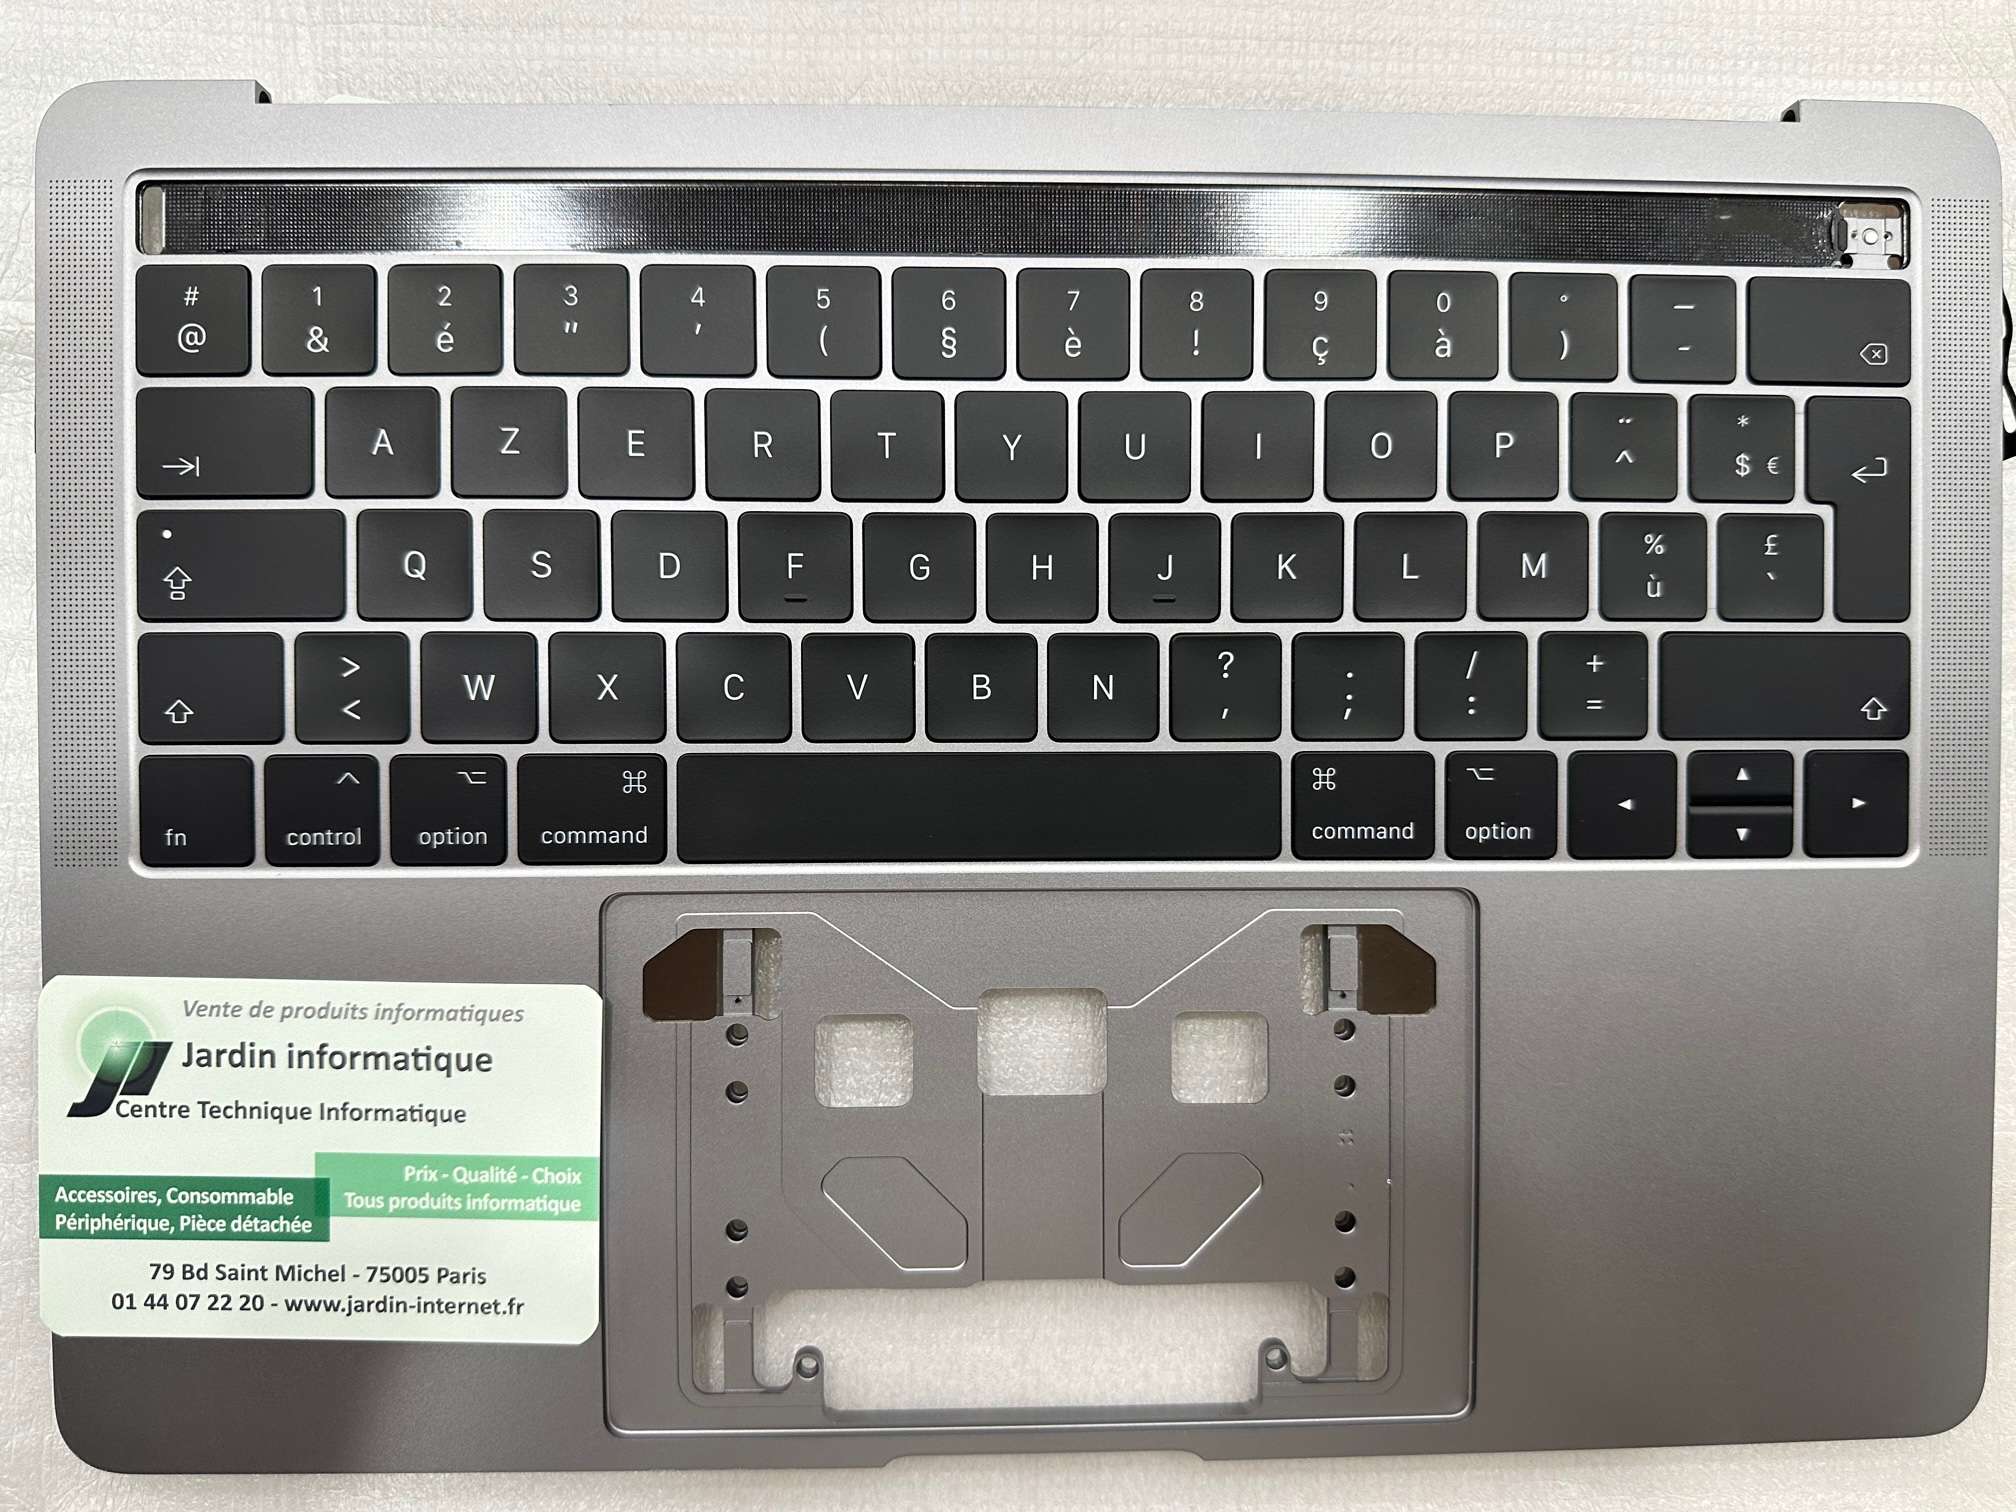 Claviers défectueux des MacBook : 6 millions $ pour l'action collective